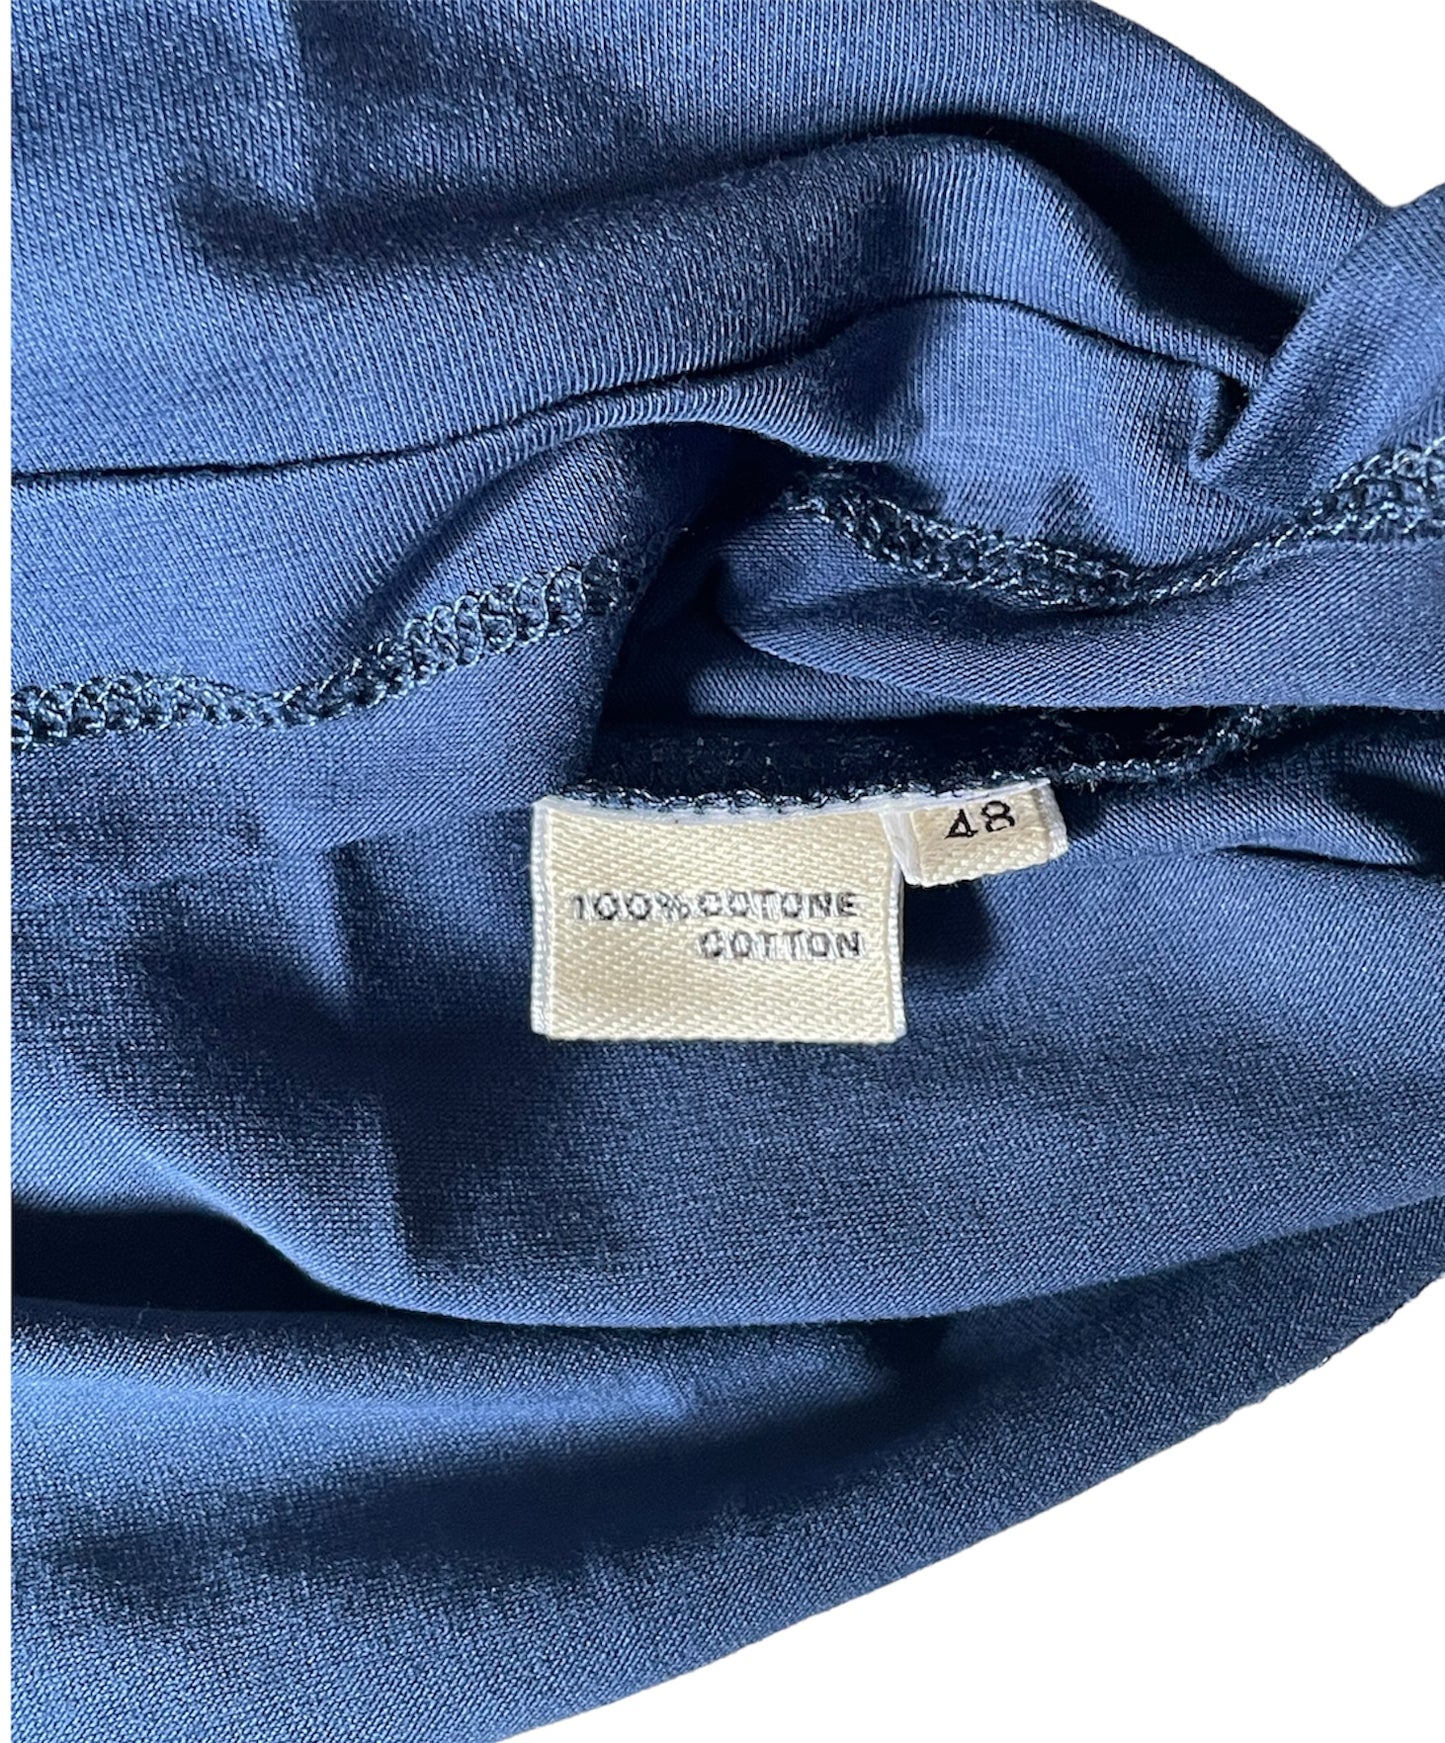 T shirt uomo basic  Blu Cashmere Company maglia cotone manica corta